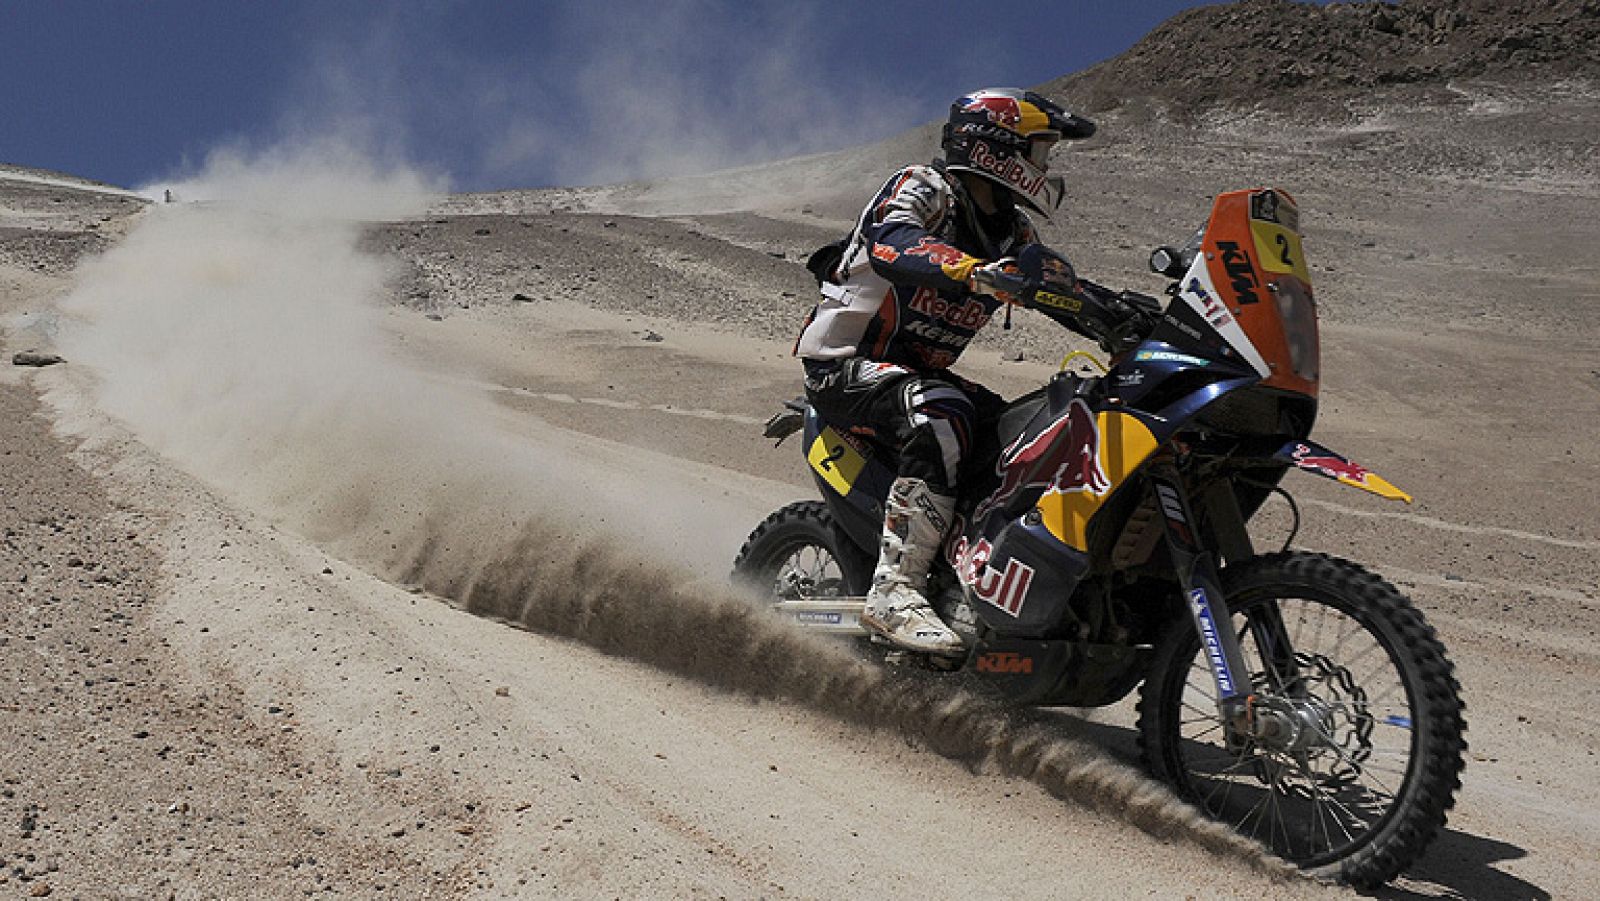 El piloto francés Cyril Despres (KTM) ha conseguido mantener el  liderato en la categoría de motos tras la disputa de la undécima  jornada del Rally Dakar, celebrada entre las localidades de Arica y  Arequipa --que abrió las puertas de Perú por prime